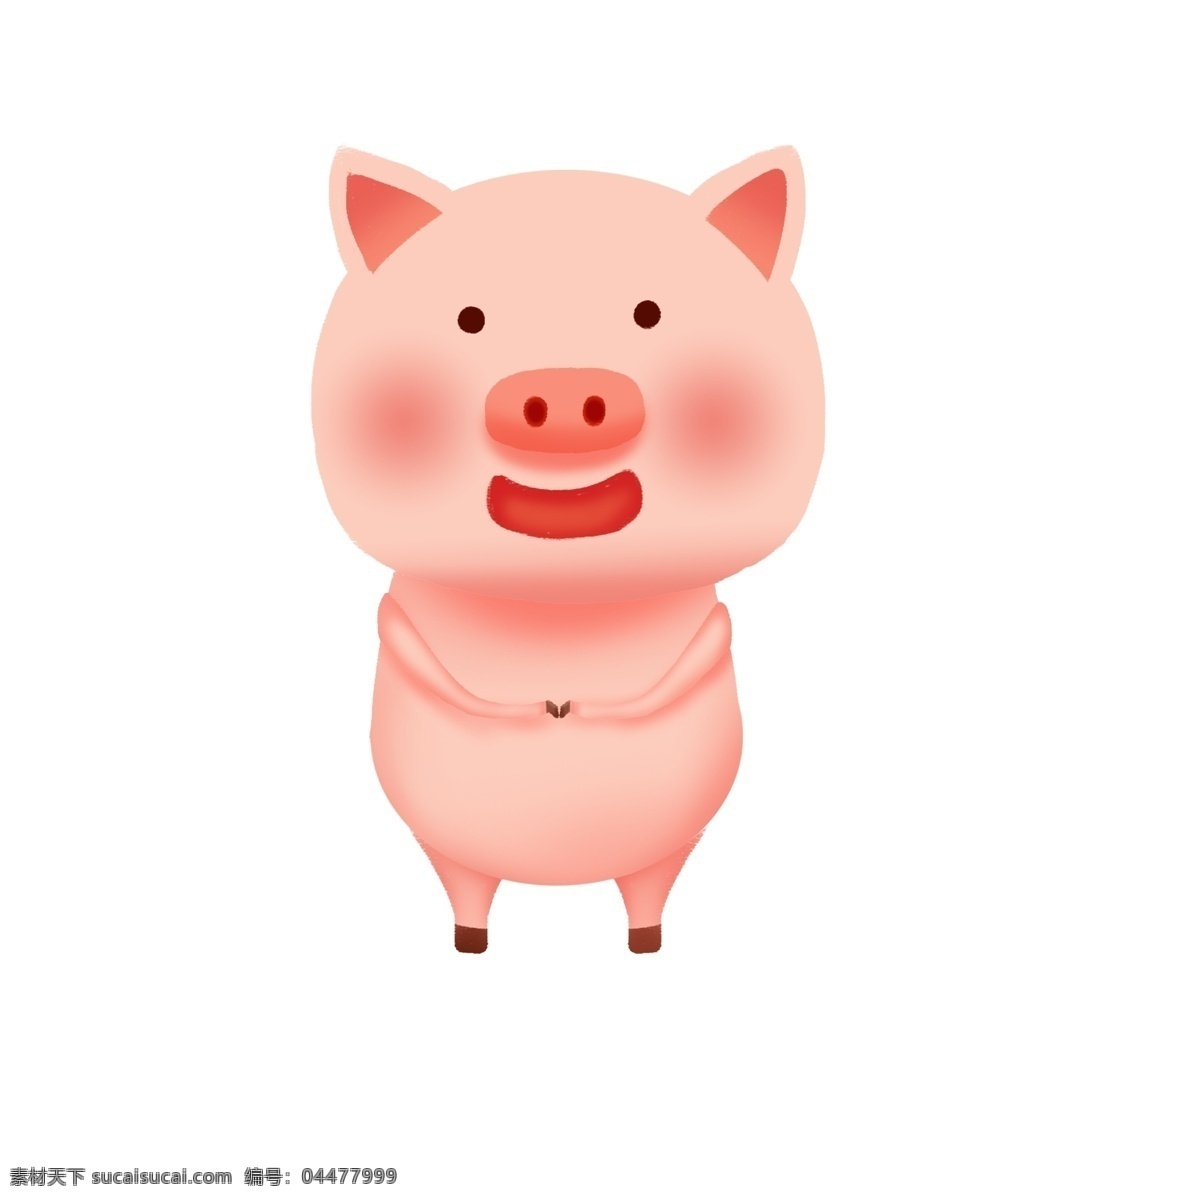 2019 猪年 粉色 系 卡通 手绘 立体 猪 卡通猪 猪宝宝 可爱猪宝宝 粉色系 卡通手绘 粉色系立体猪 可爱立体猪